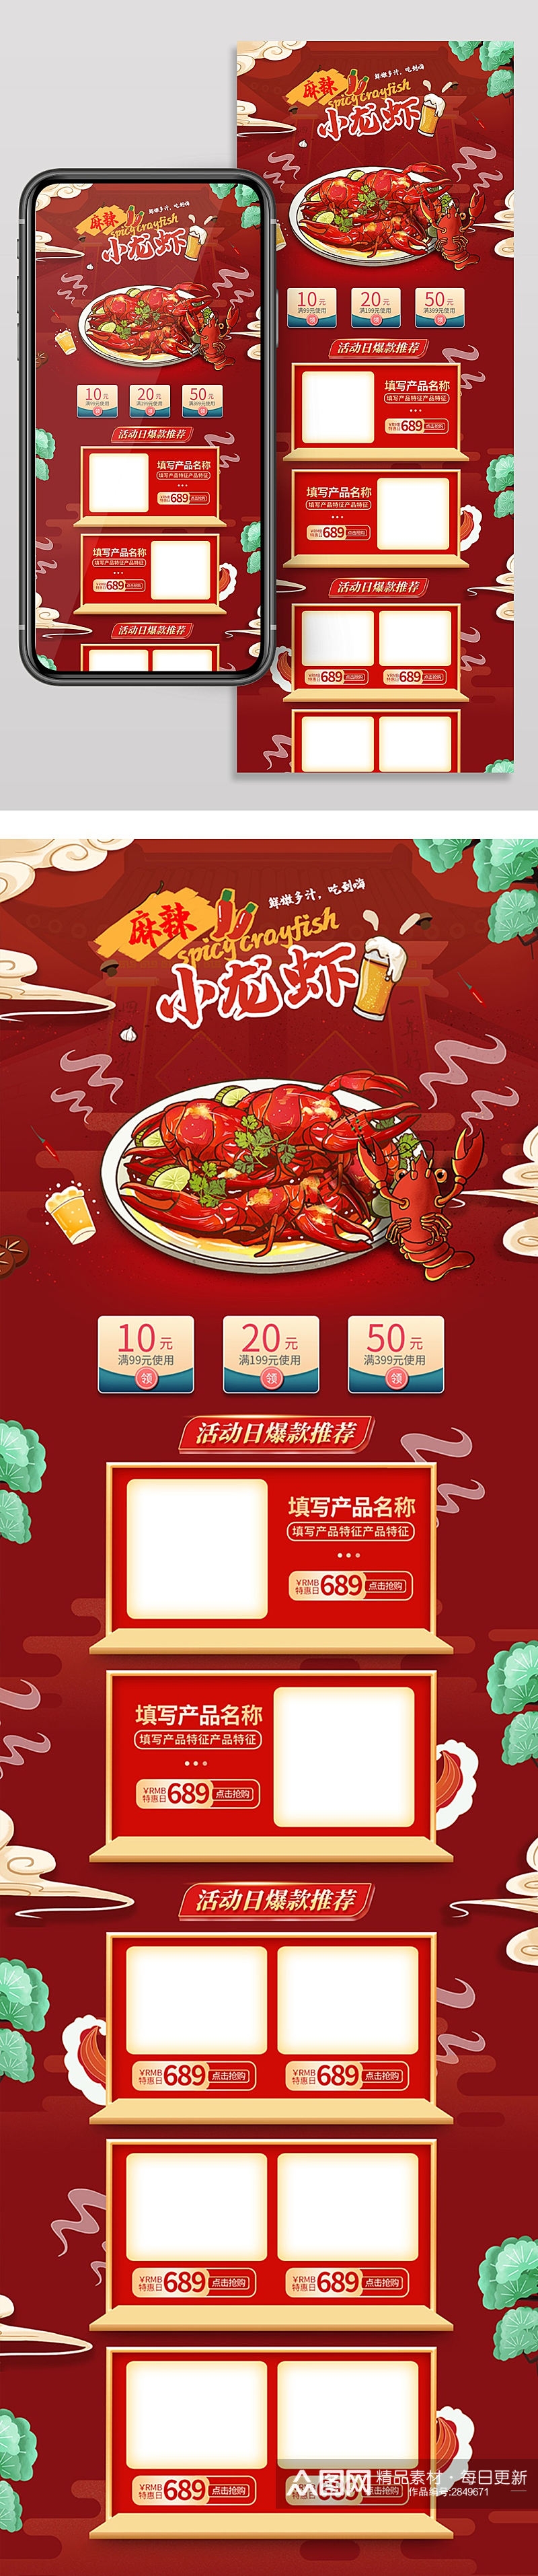 小龙虾店铺首页模版手机装修美食红色素材